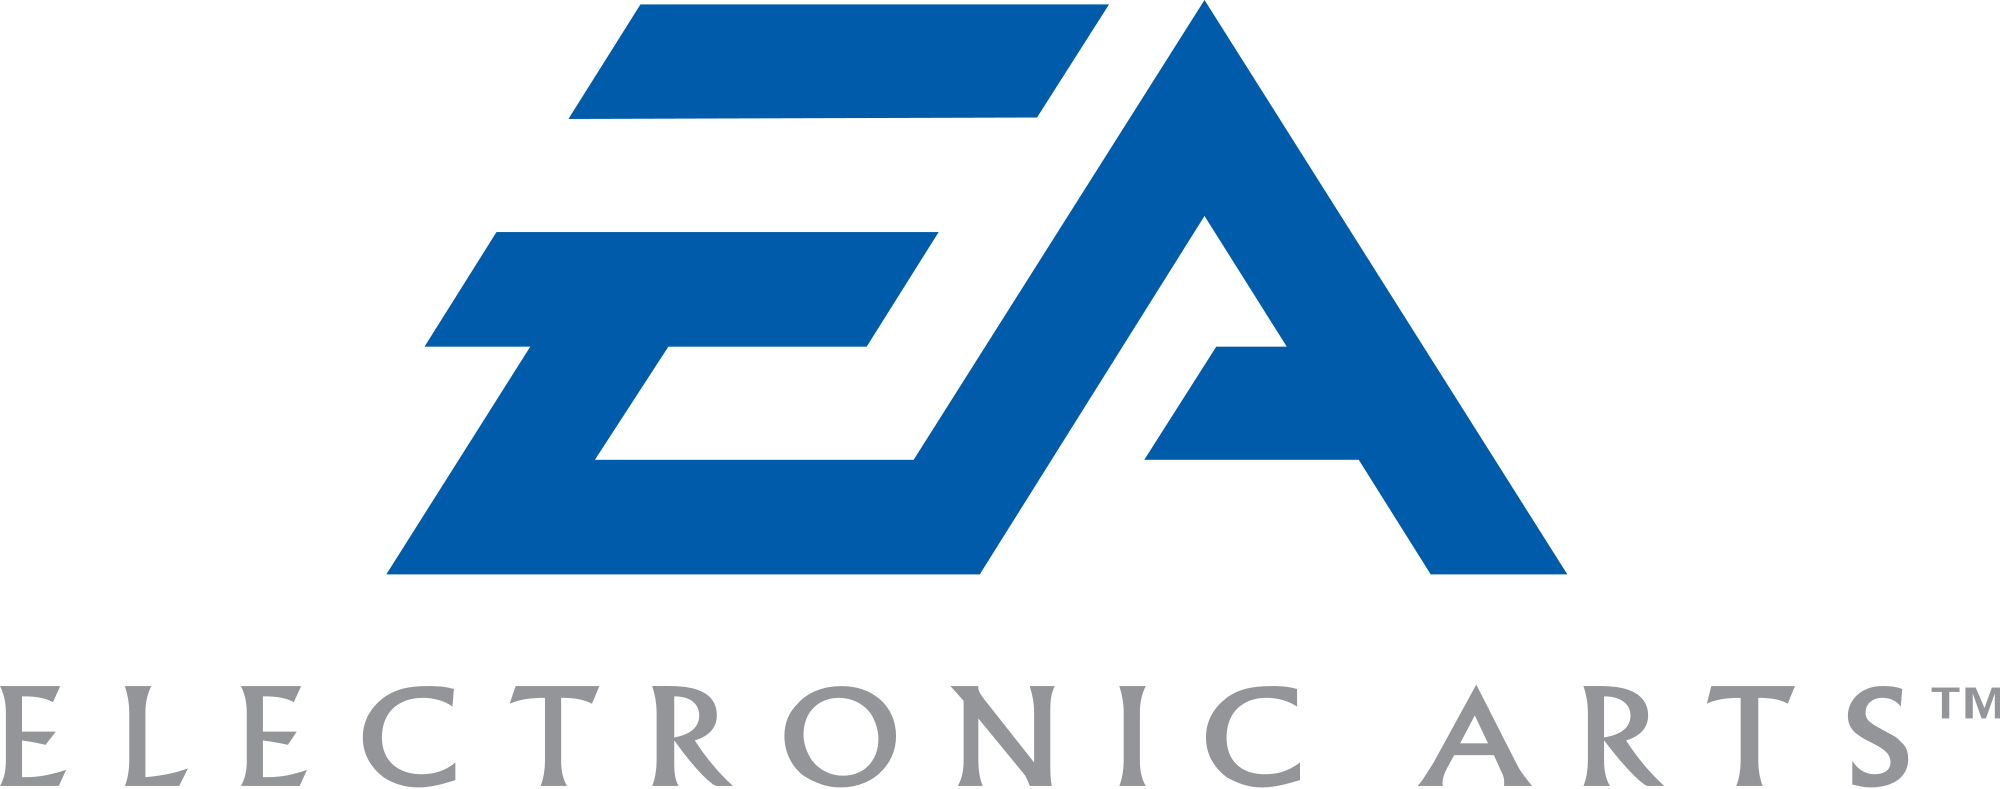 Electronic Arts (EA) Brand Logo